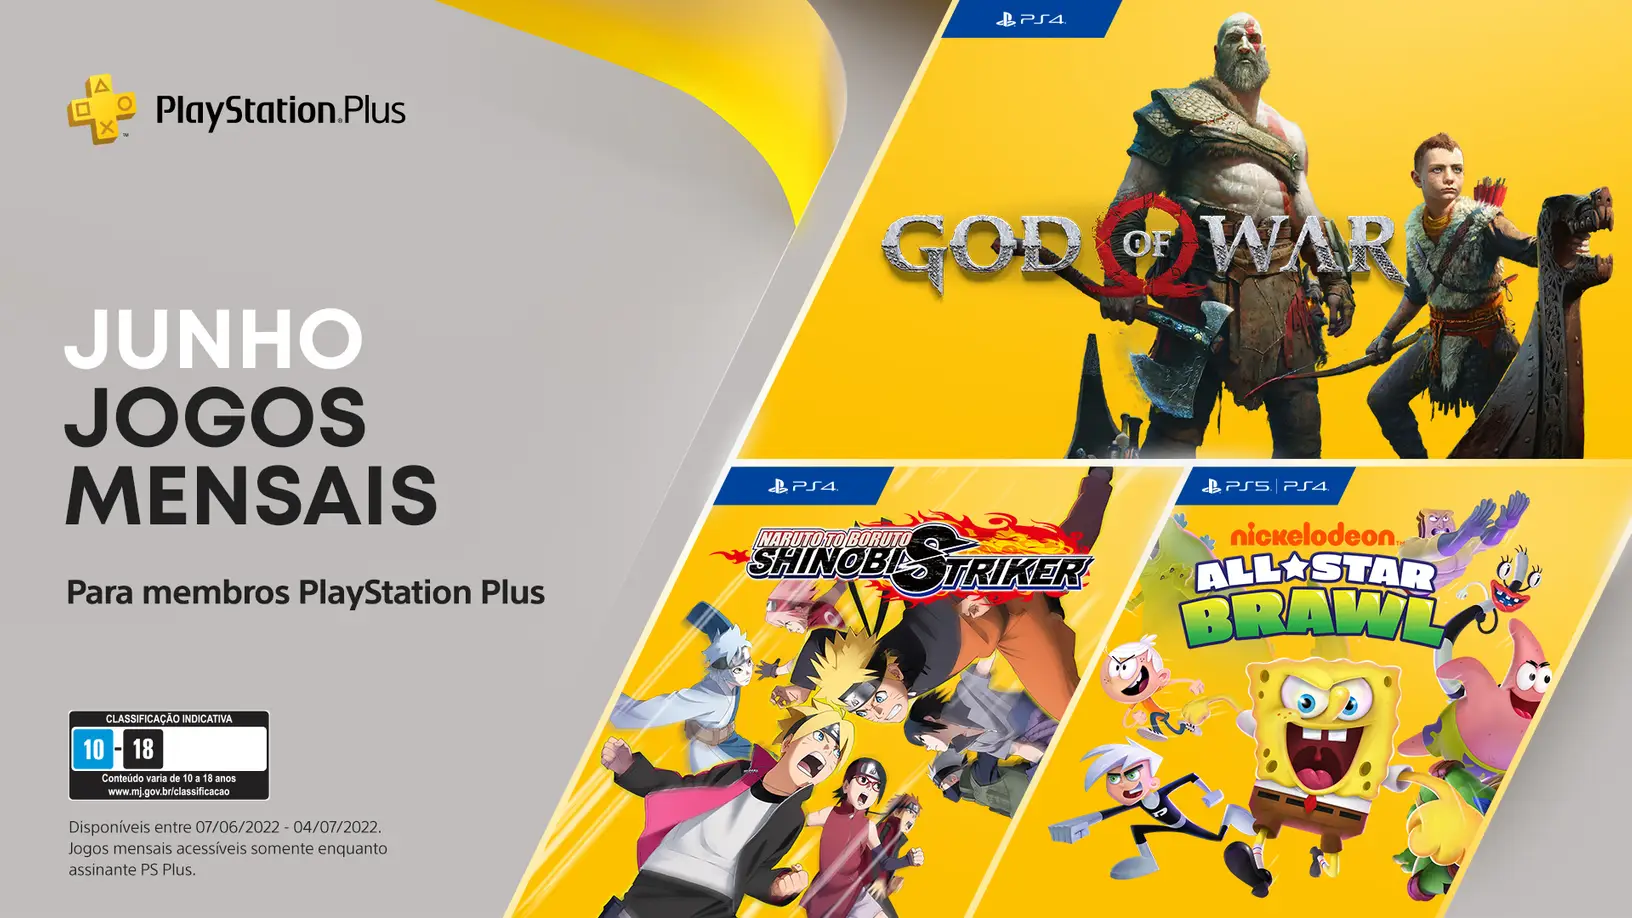 Anunciado os jogos do Playstation Plus de Junho 2022 Amigos Gamers